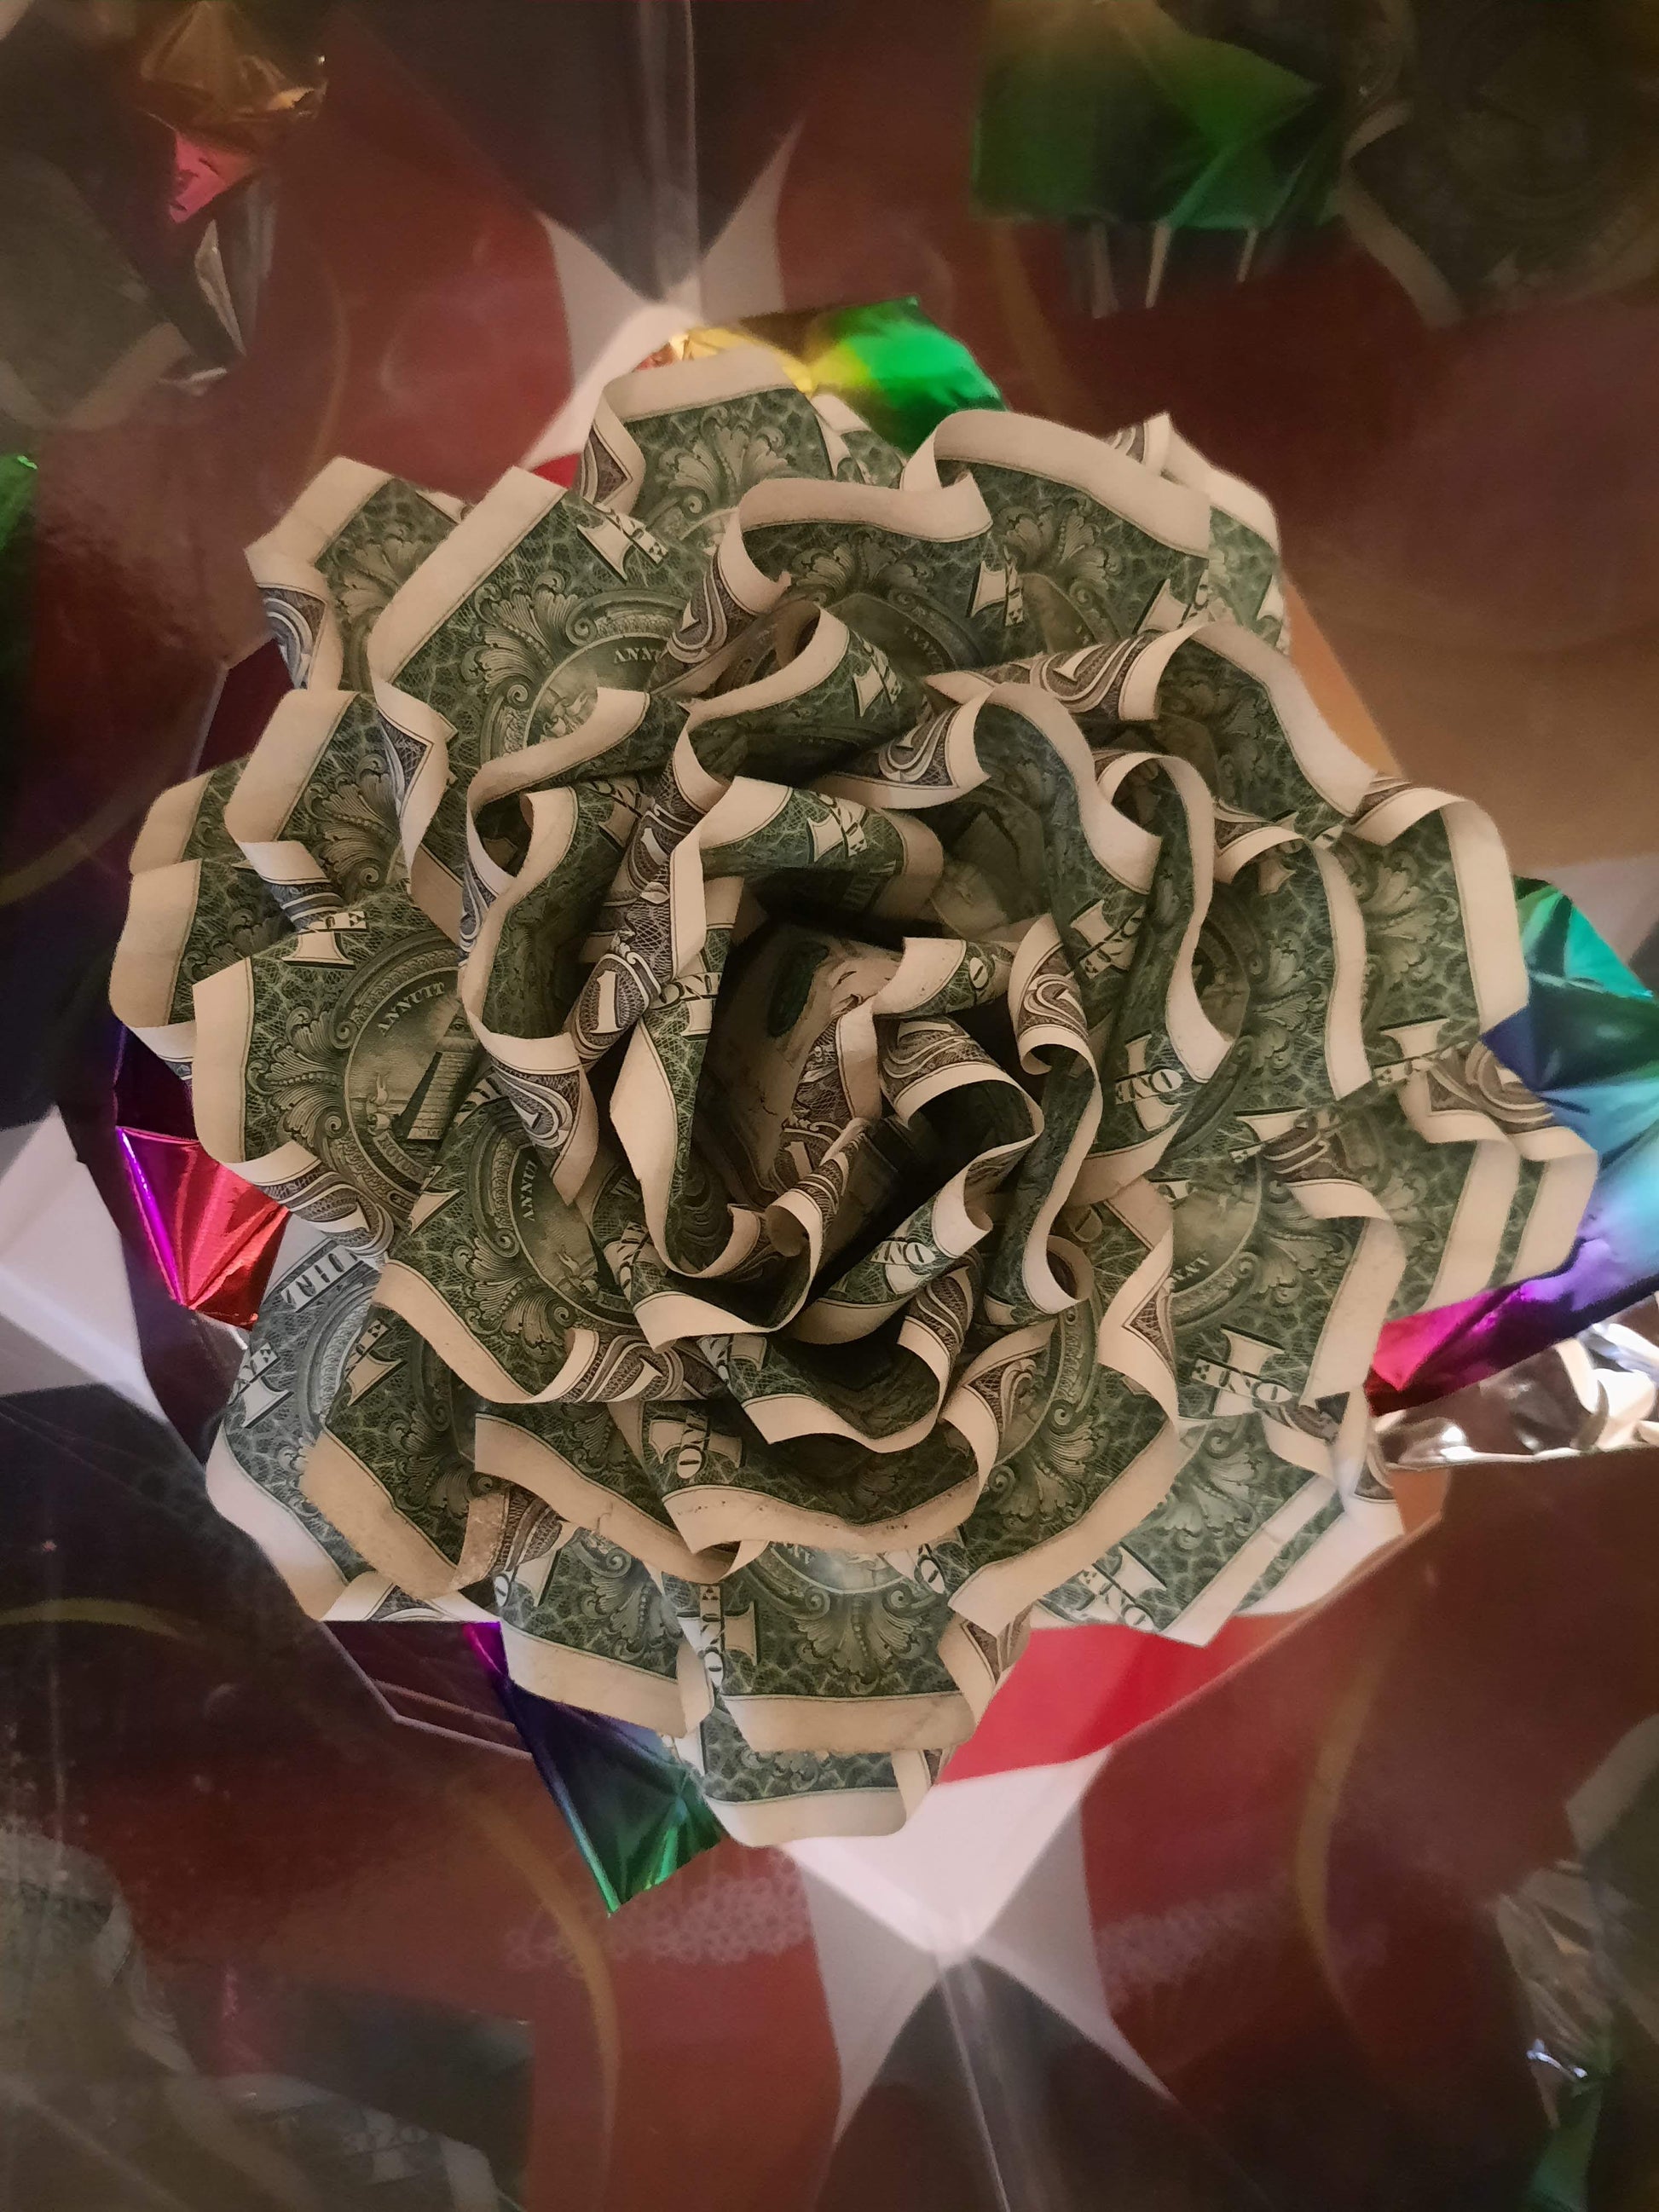 Huge Cash Rose by Spendable Arrangements